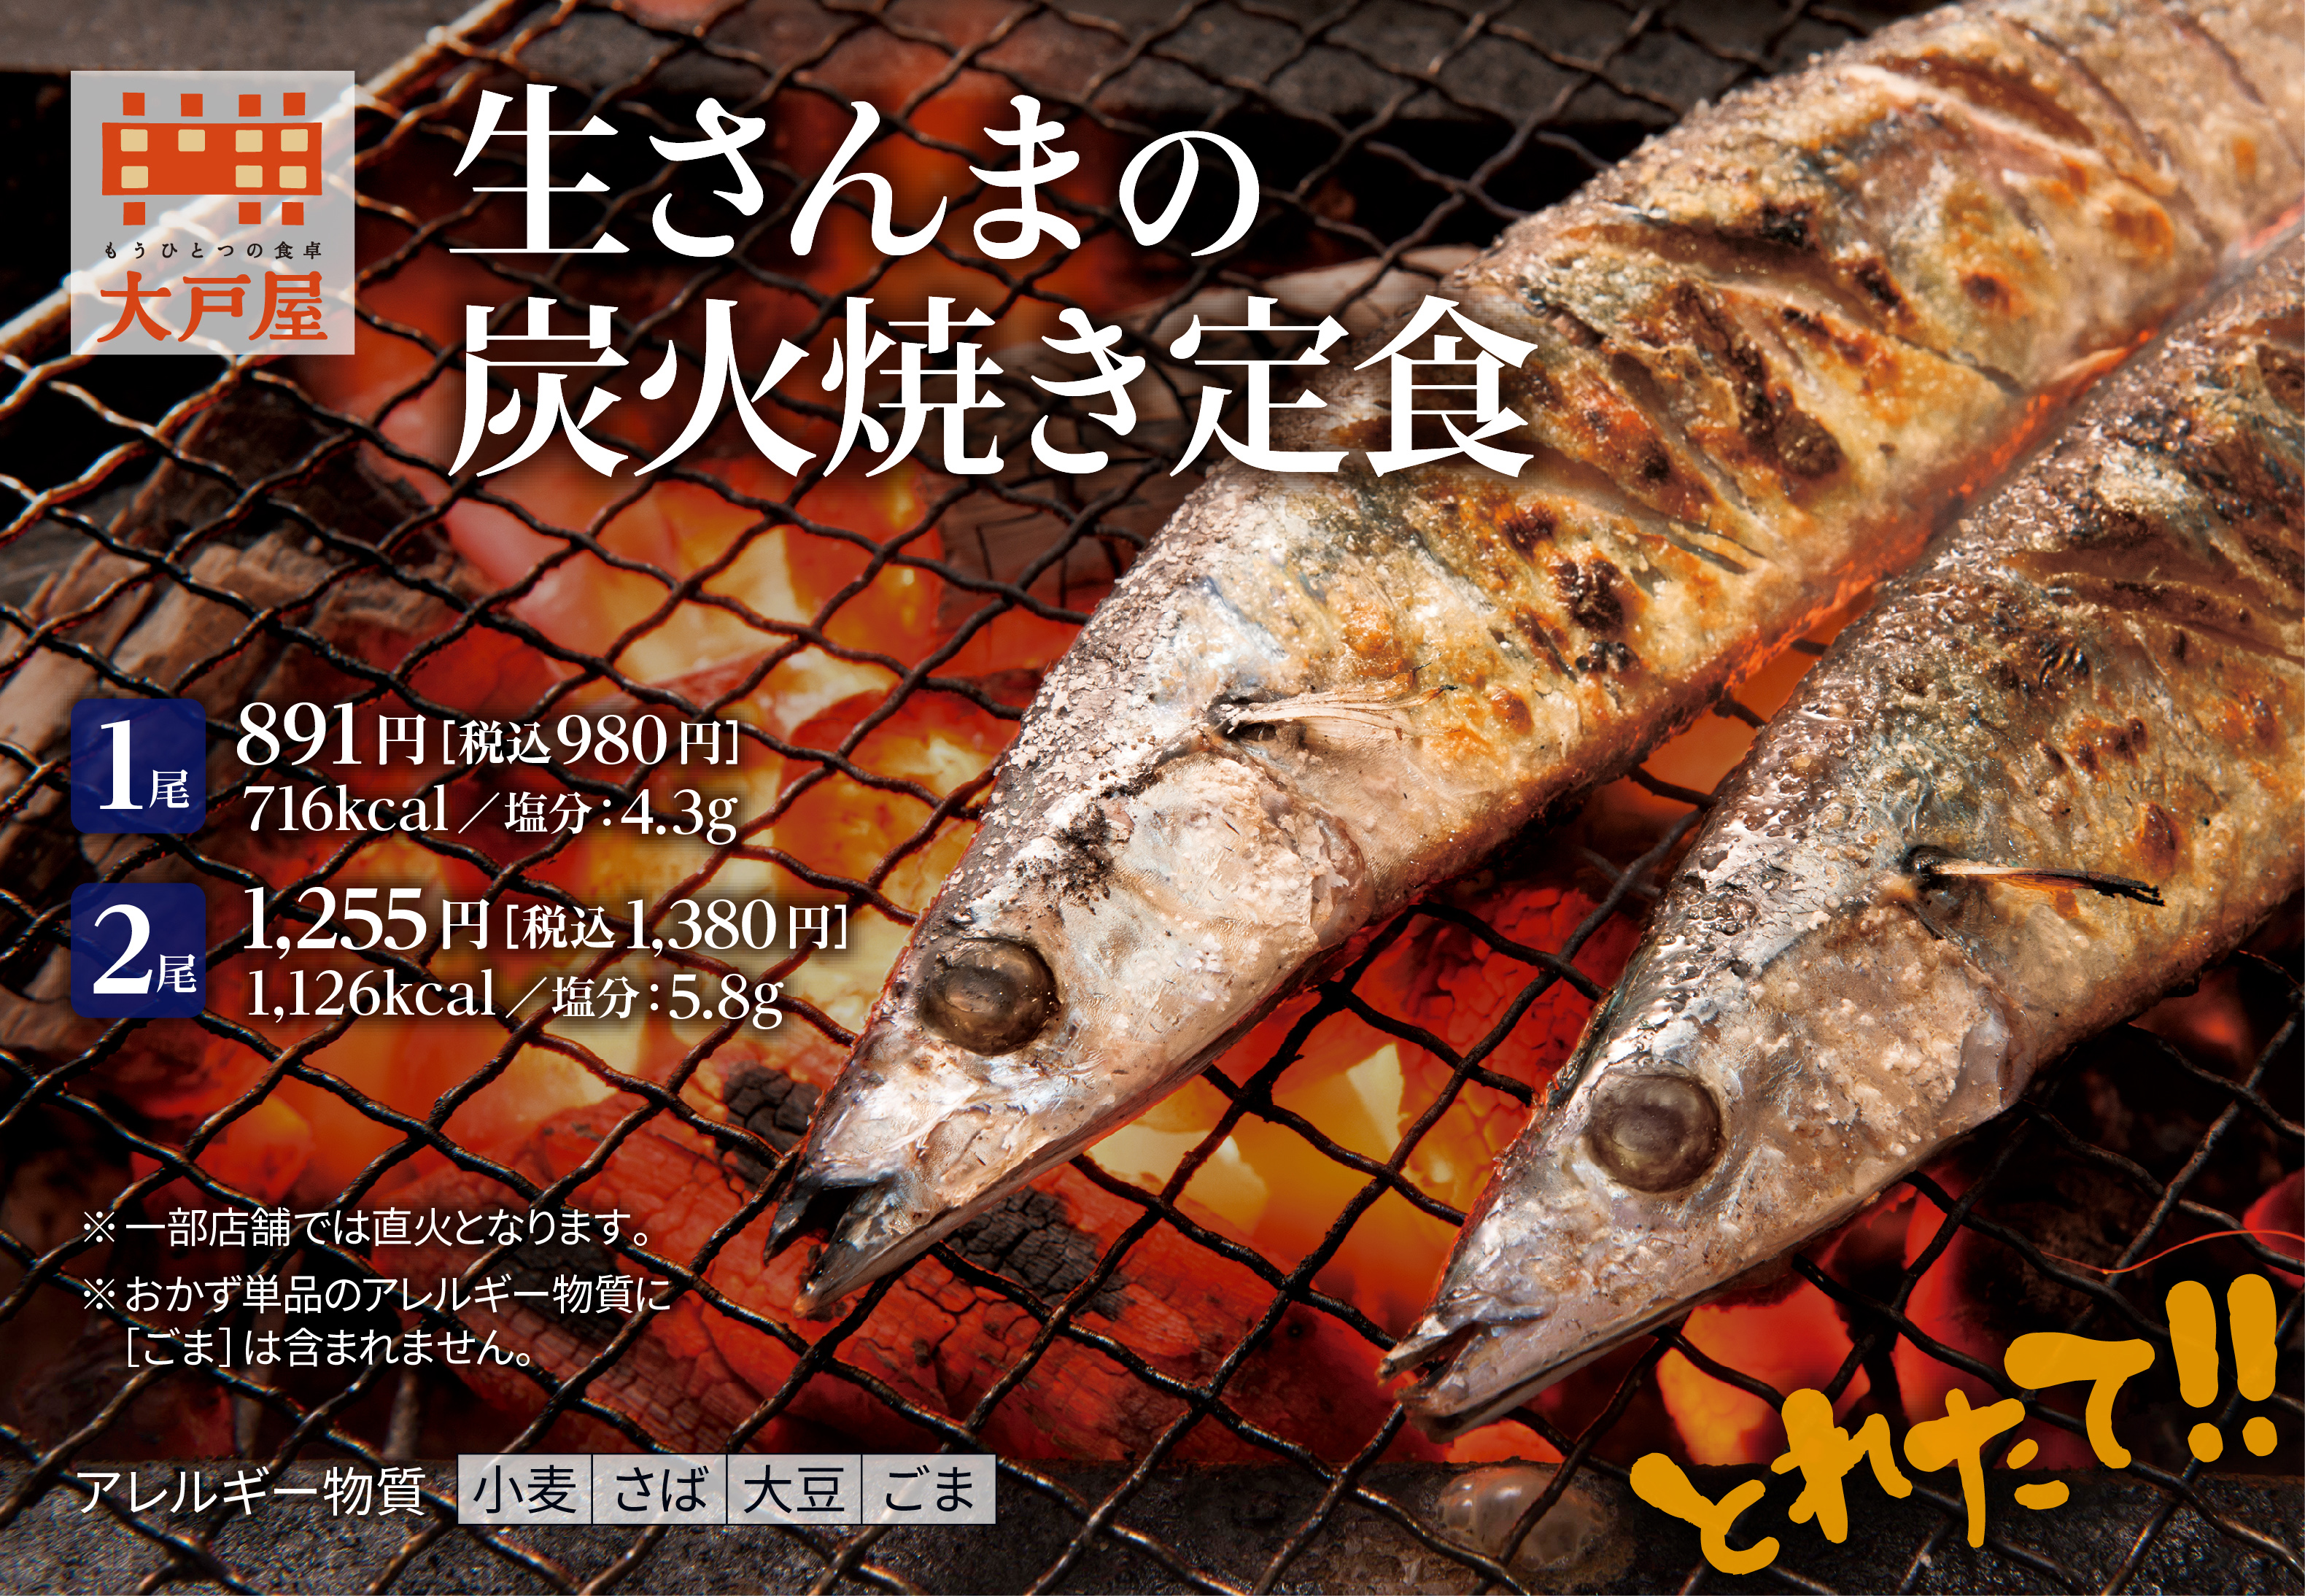 お待たせしました！ 令和元年産「生さんまの炭火焼き定食」10月12日(土)より期間限定で販売開始！